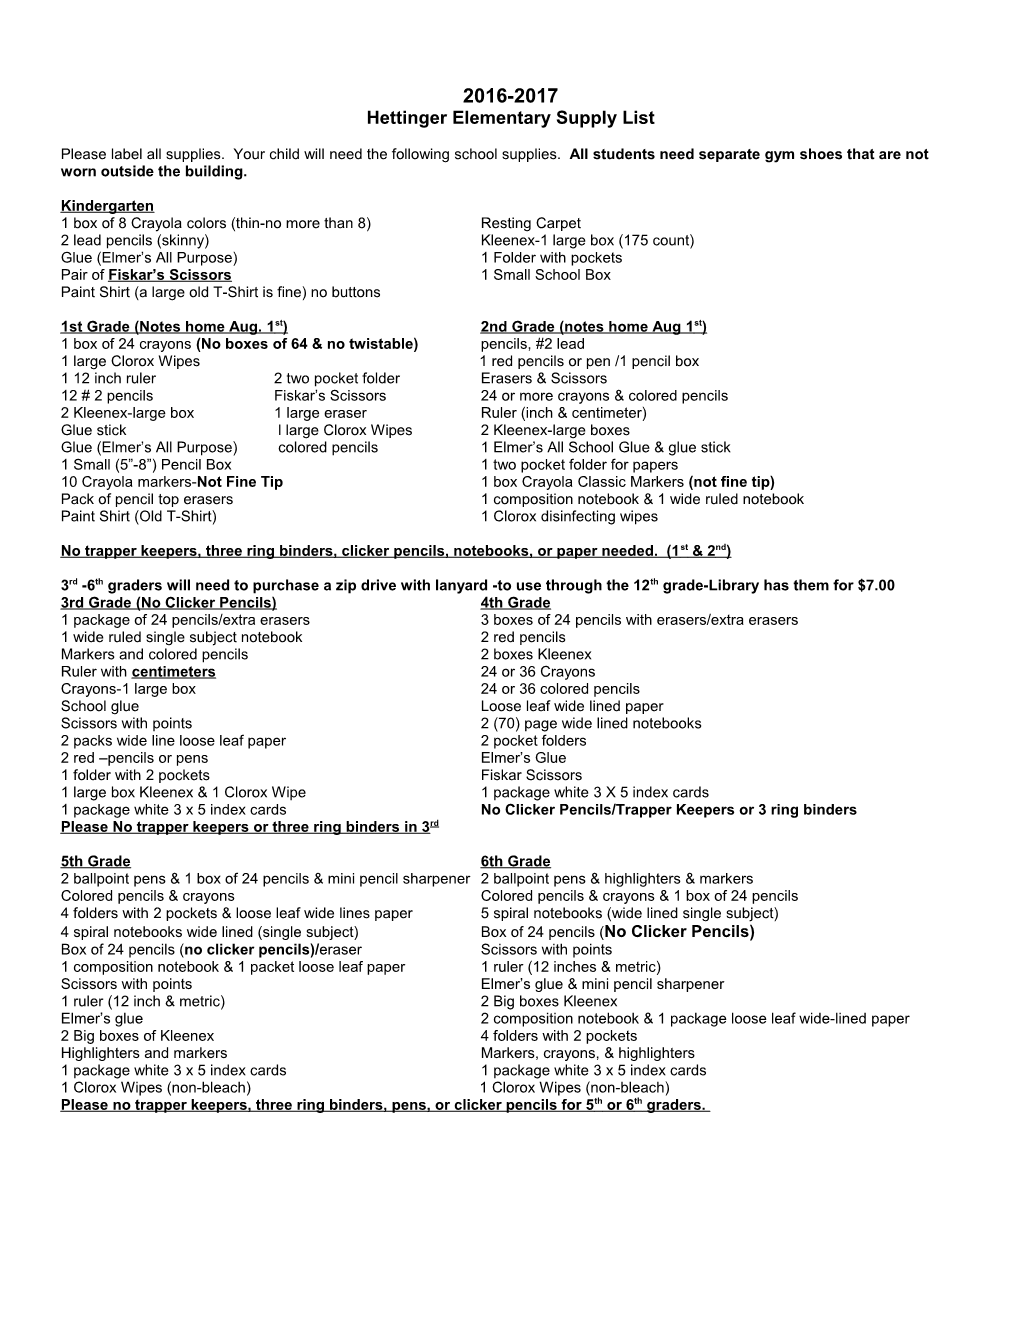 Hettinger Elementary Supply List